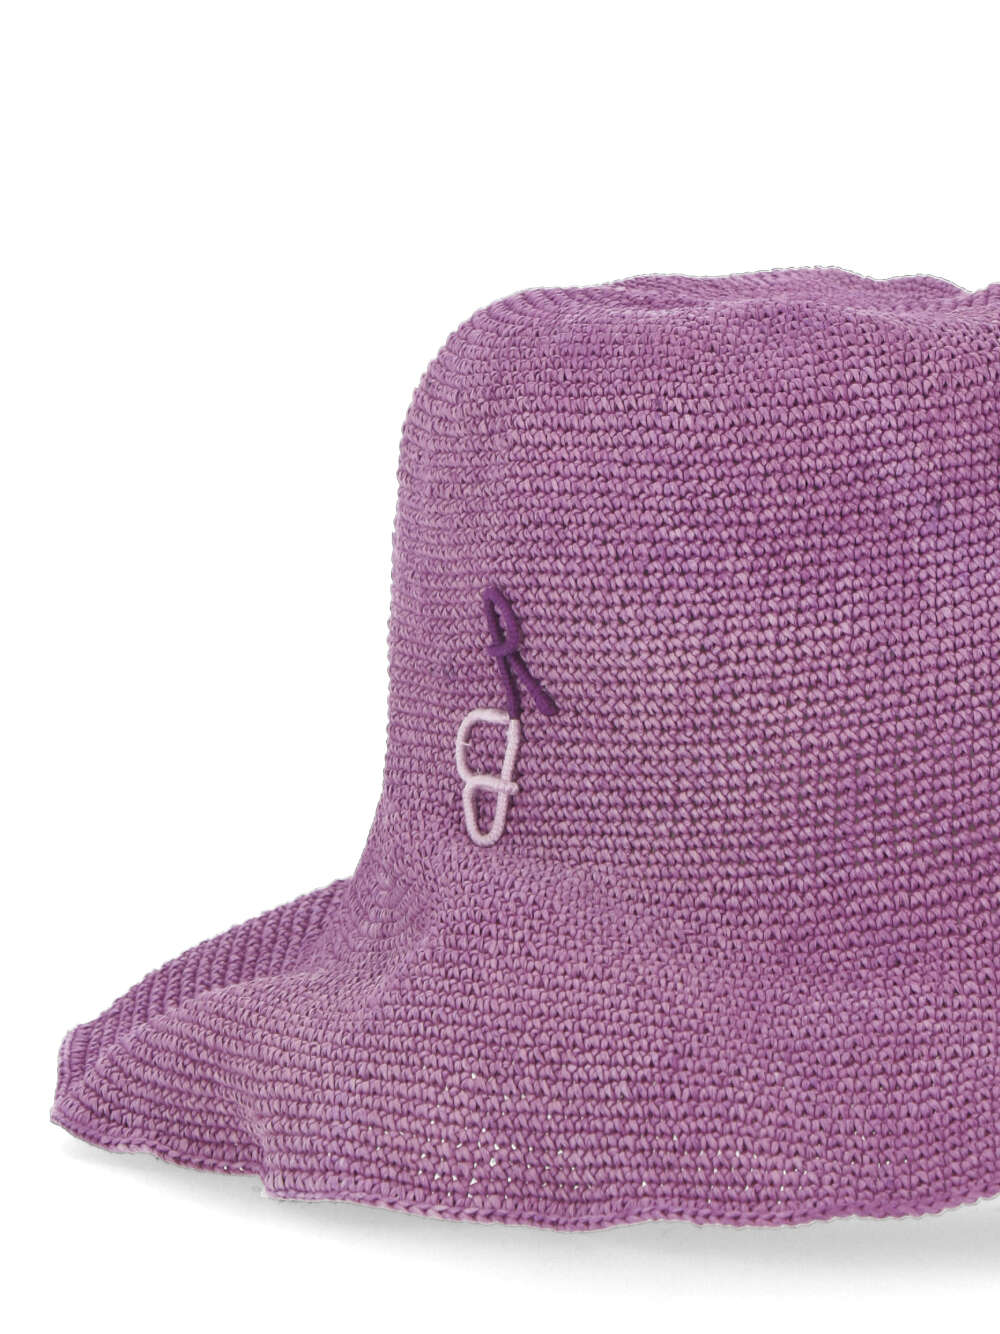 RUSLAN BAGINSKIY BCTSTRKNTY Woman Purple Hats - Zuklat